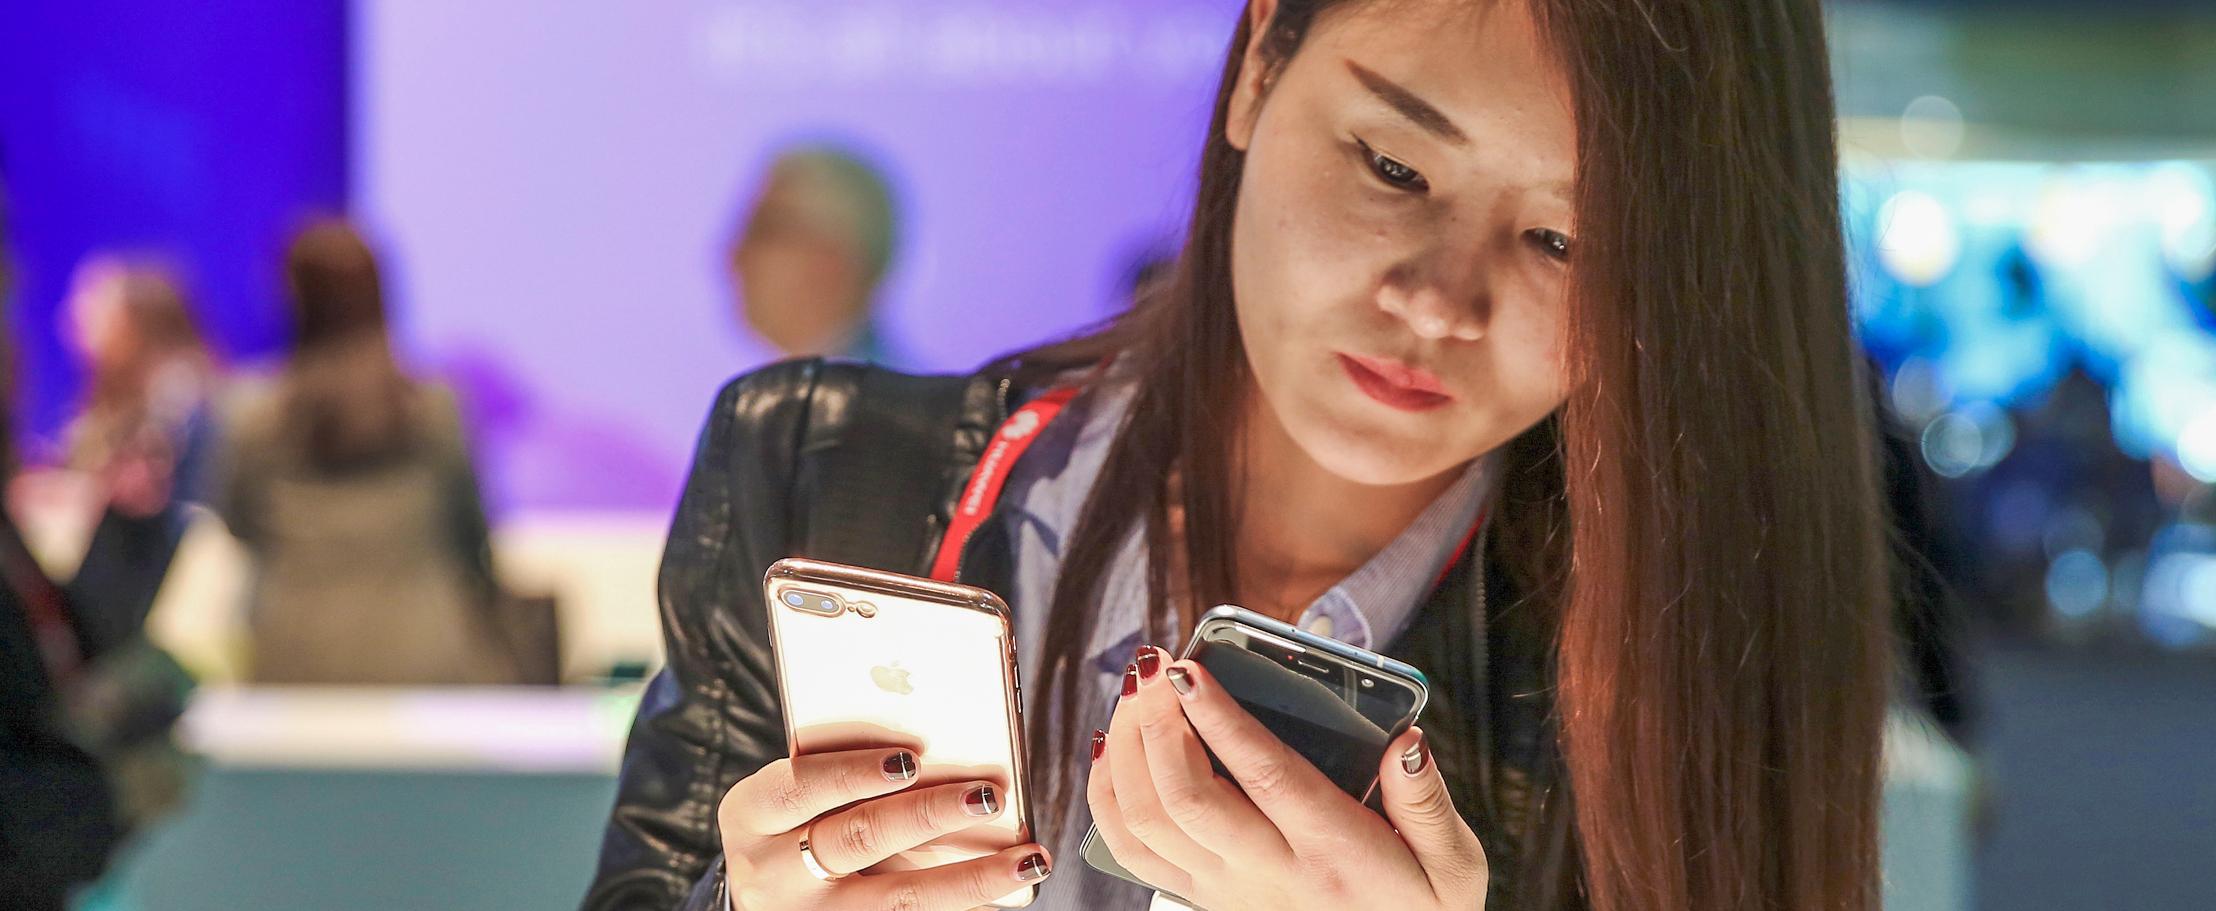 Nokia, HTC и OnePlus разорвут чарты смартфонов в ближайшие месяцы